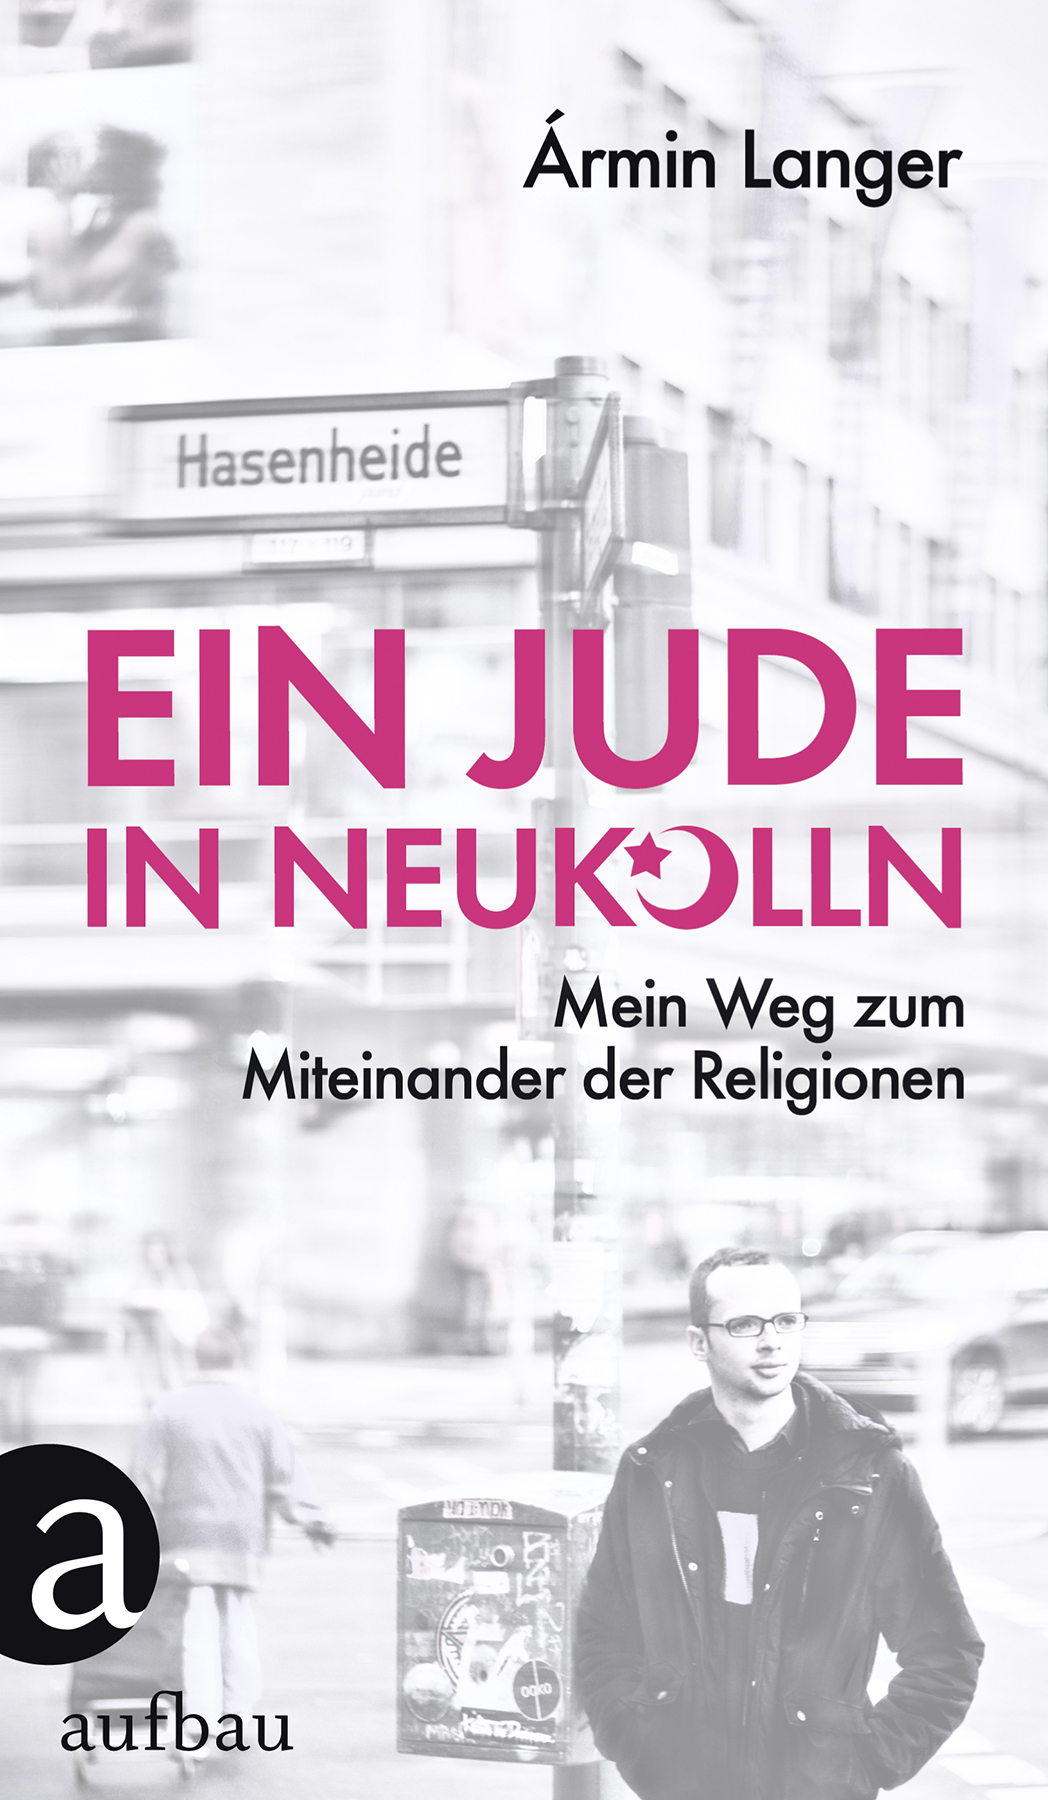 Cover of Armin Langer's "Ein Jude in Neukolln: Mein Weg zum Miteinander der Religionen" (published by Aufbau Verlag)